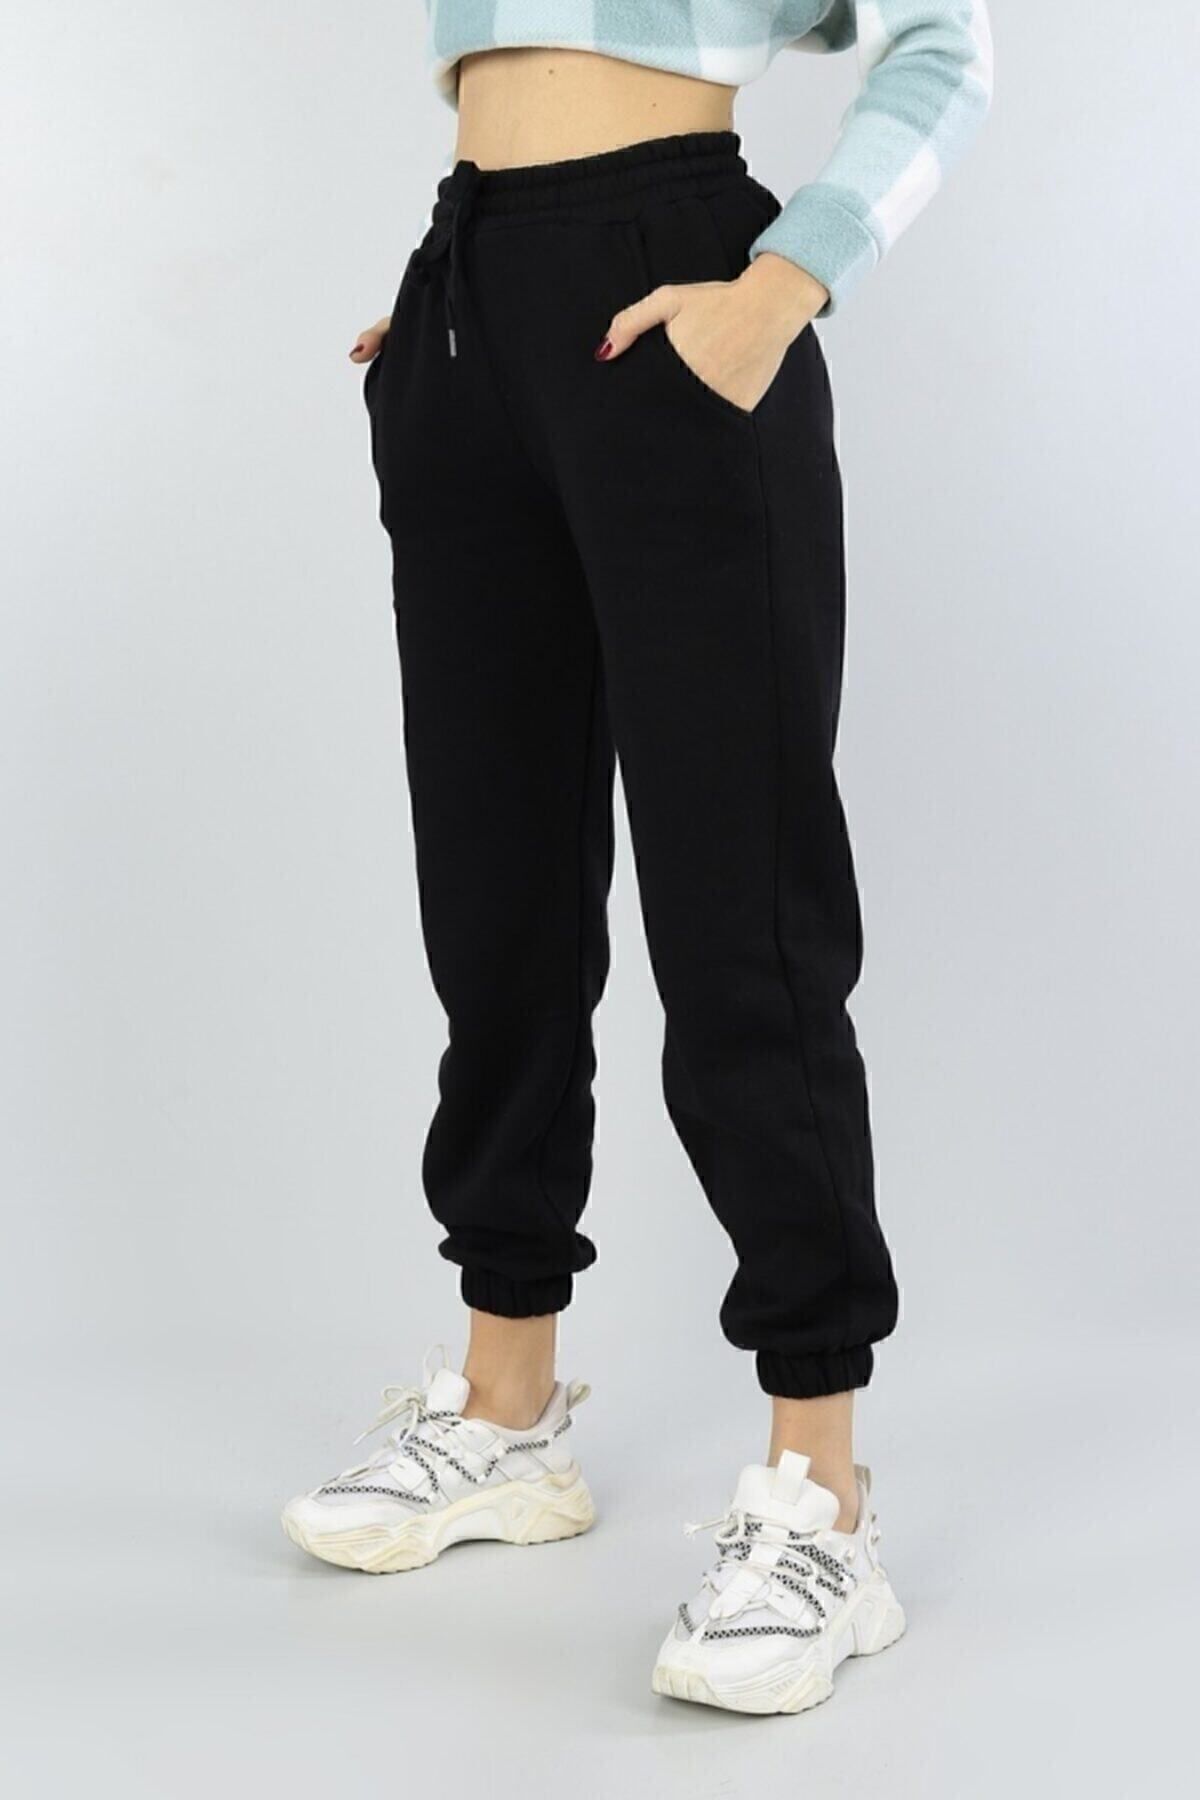 MERCB Yoga Takımları Dikişsiz Aktif Giyim Kadın Spor Kıyafeti Yoga Kıyafeti  Fitness Spor Giyim Spor Salonu Egzersiz Kıyafet Seti Seti Kırmızı Pembe  Siyah (C : : Moda